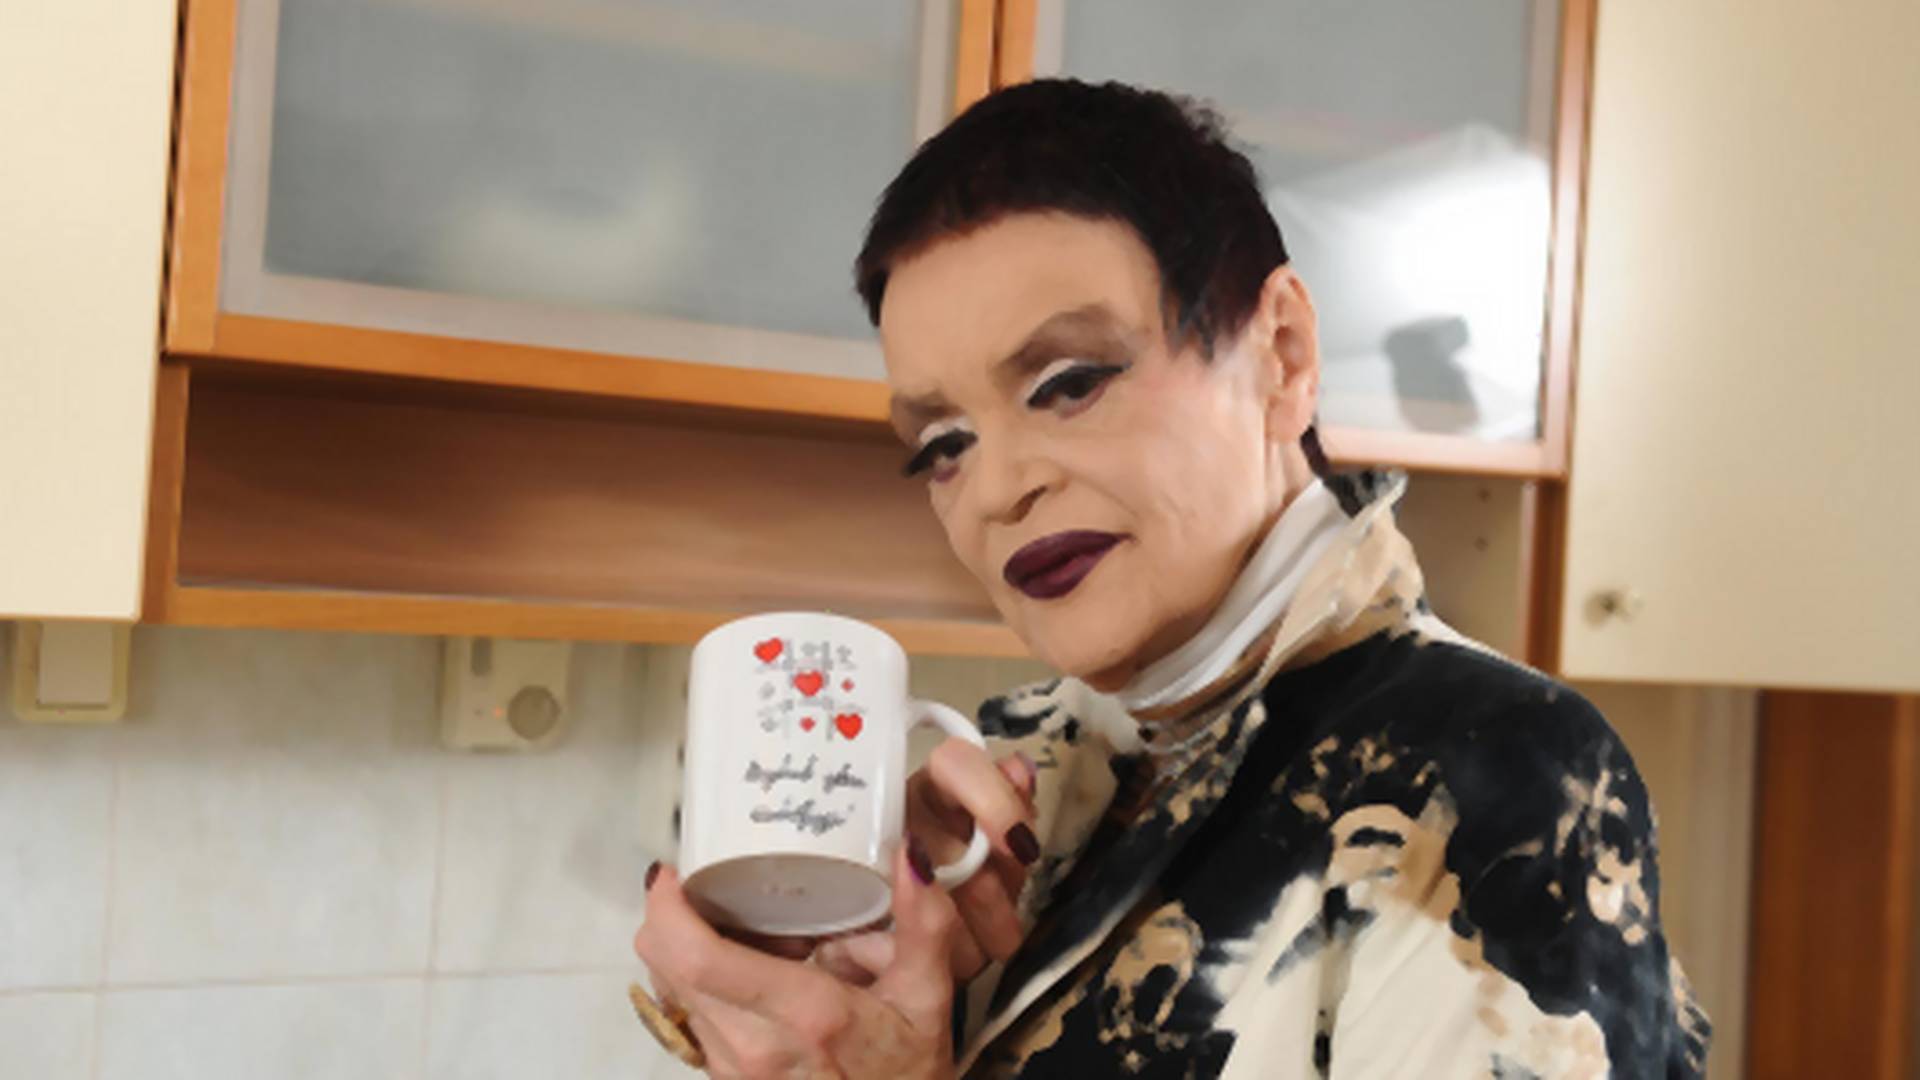 Nije više "Dobro jutro, lepotice" : Ruška Jakić ima novu mantru